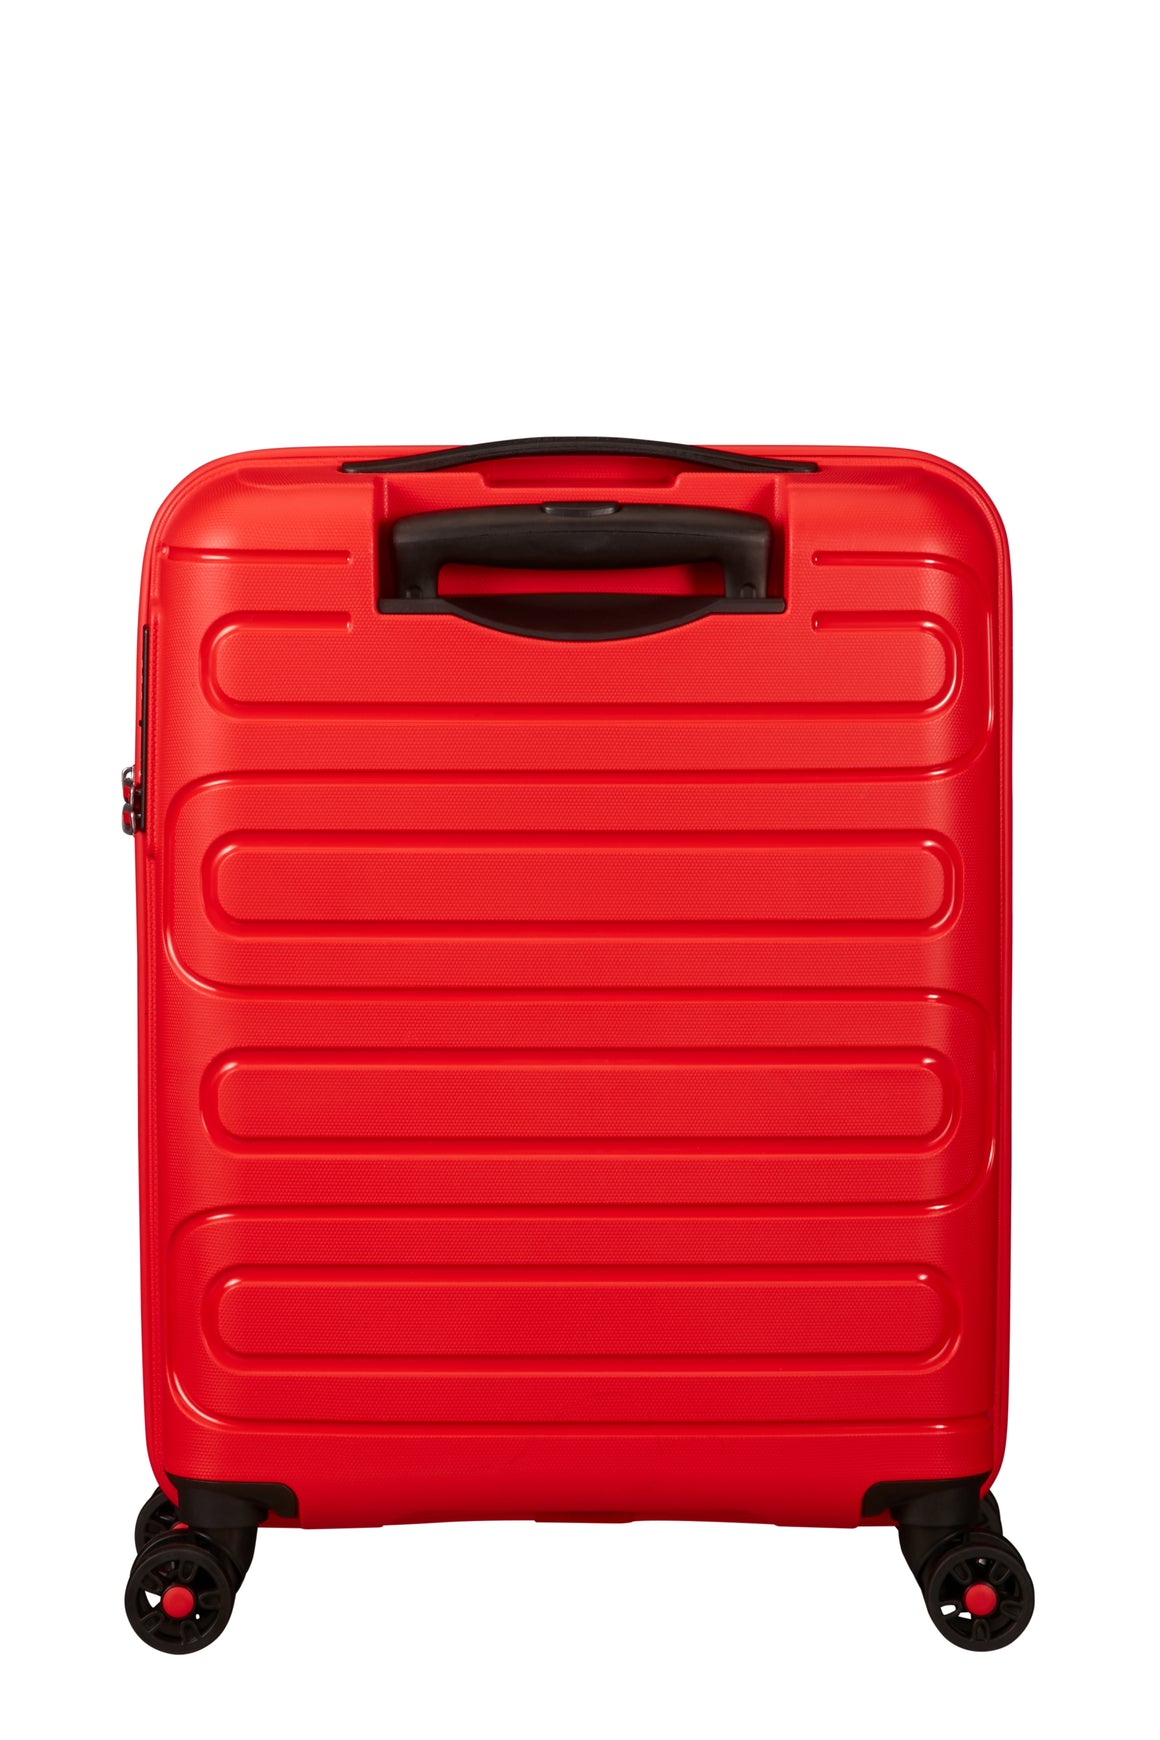 American Tourister Sunside Stor Utvidbar Koffert 77 cm/ 118 Liter Sunset Red